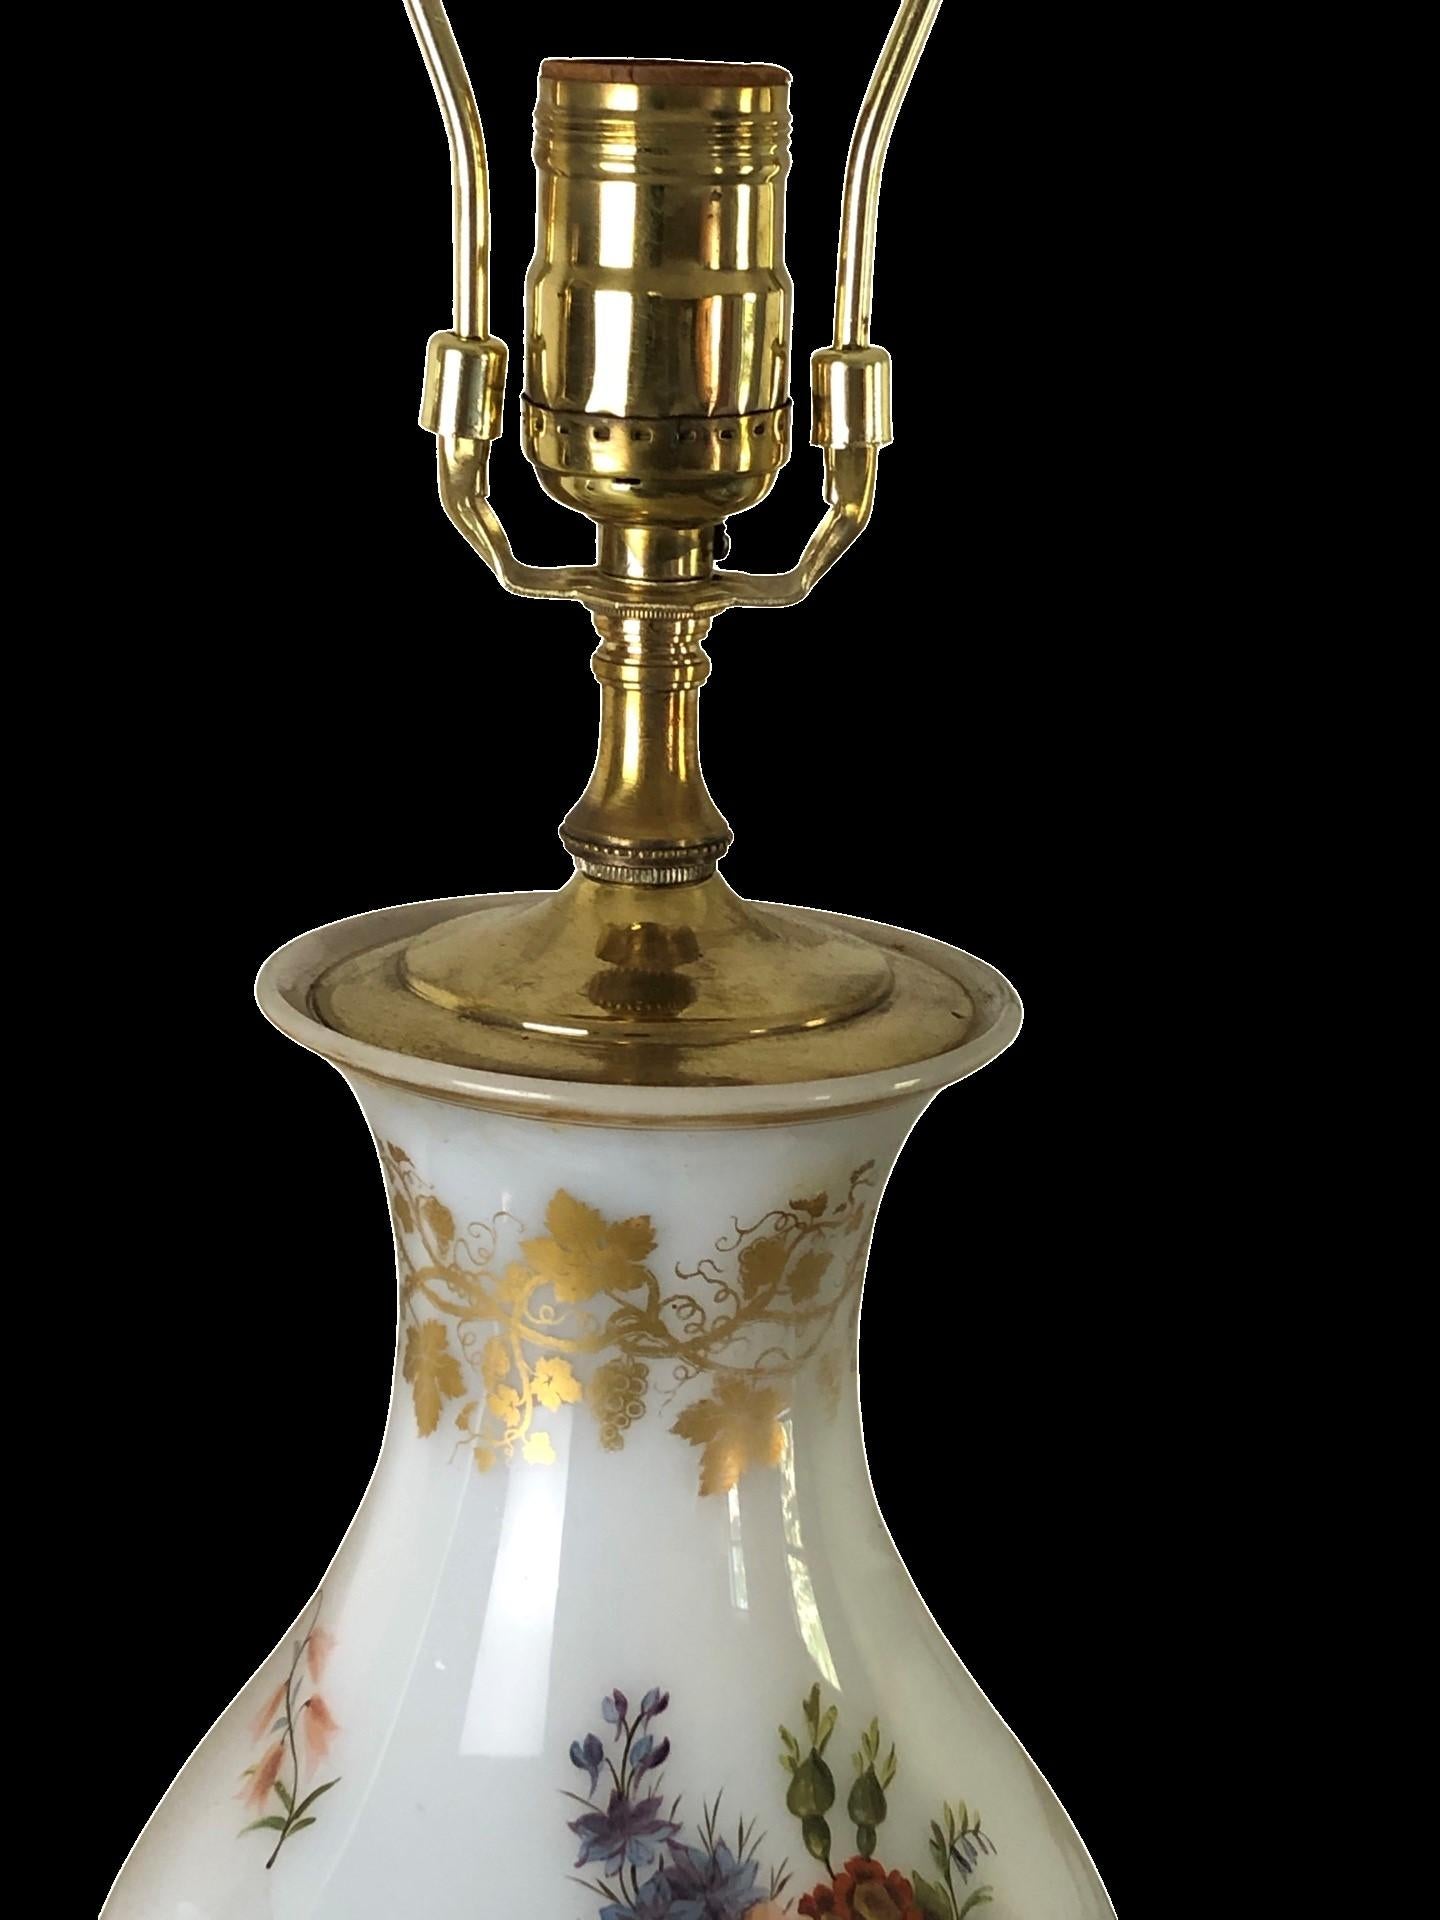 Paire de vases en opaline blanche de Baccarat de la fin du C.I.C. avec des décorations florales et dorées. Les vases sont magnifiquement montés sur une base en bois doré. En excellent état avec des pertes minimes de dorure sur les vases. Câblé et en